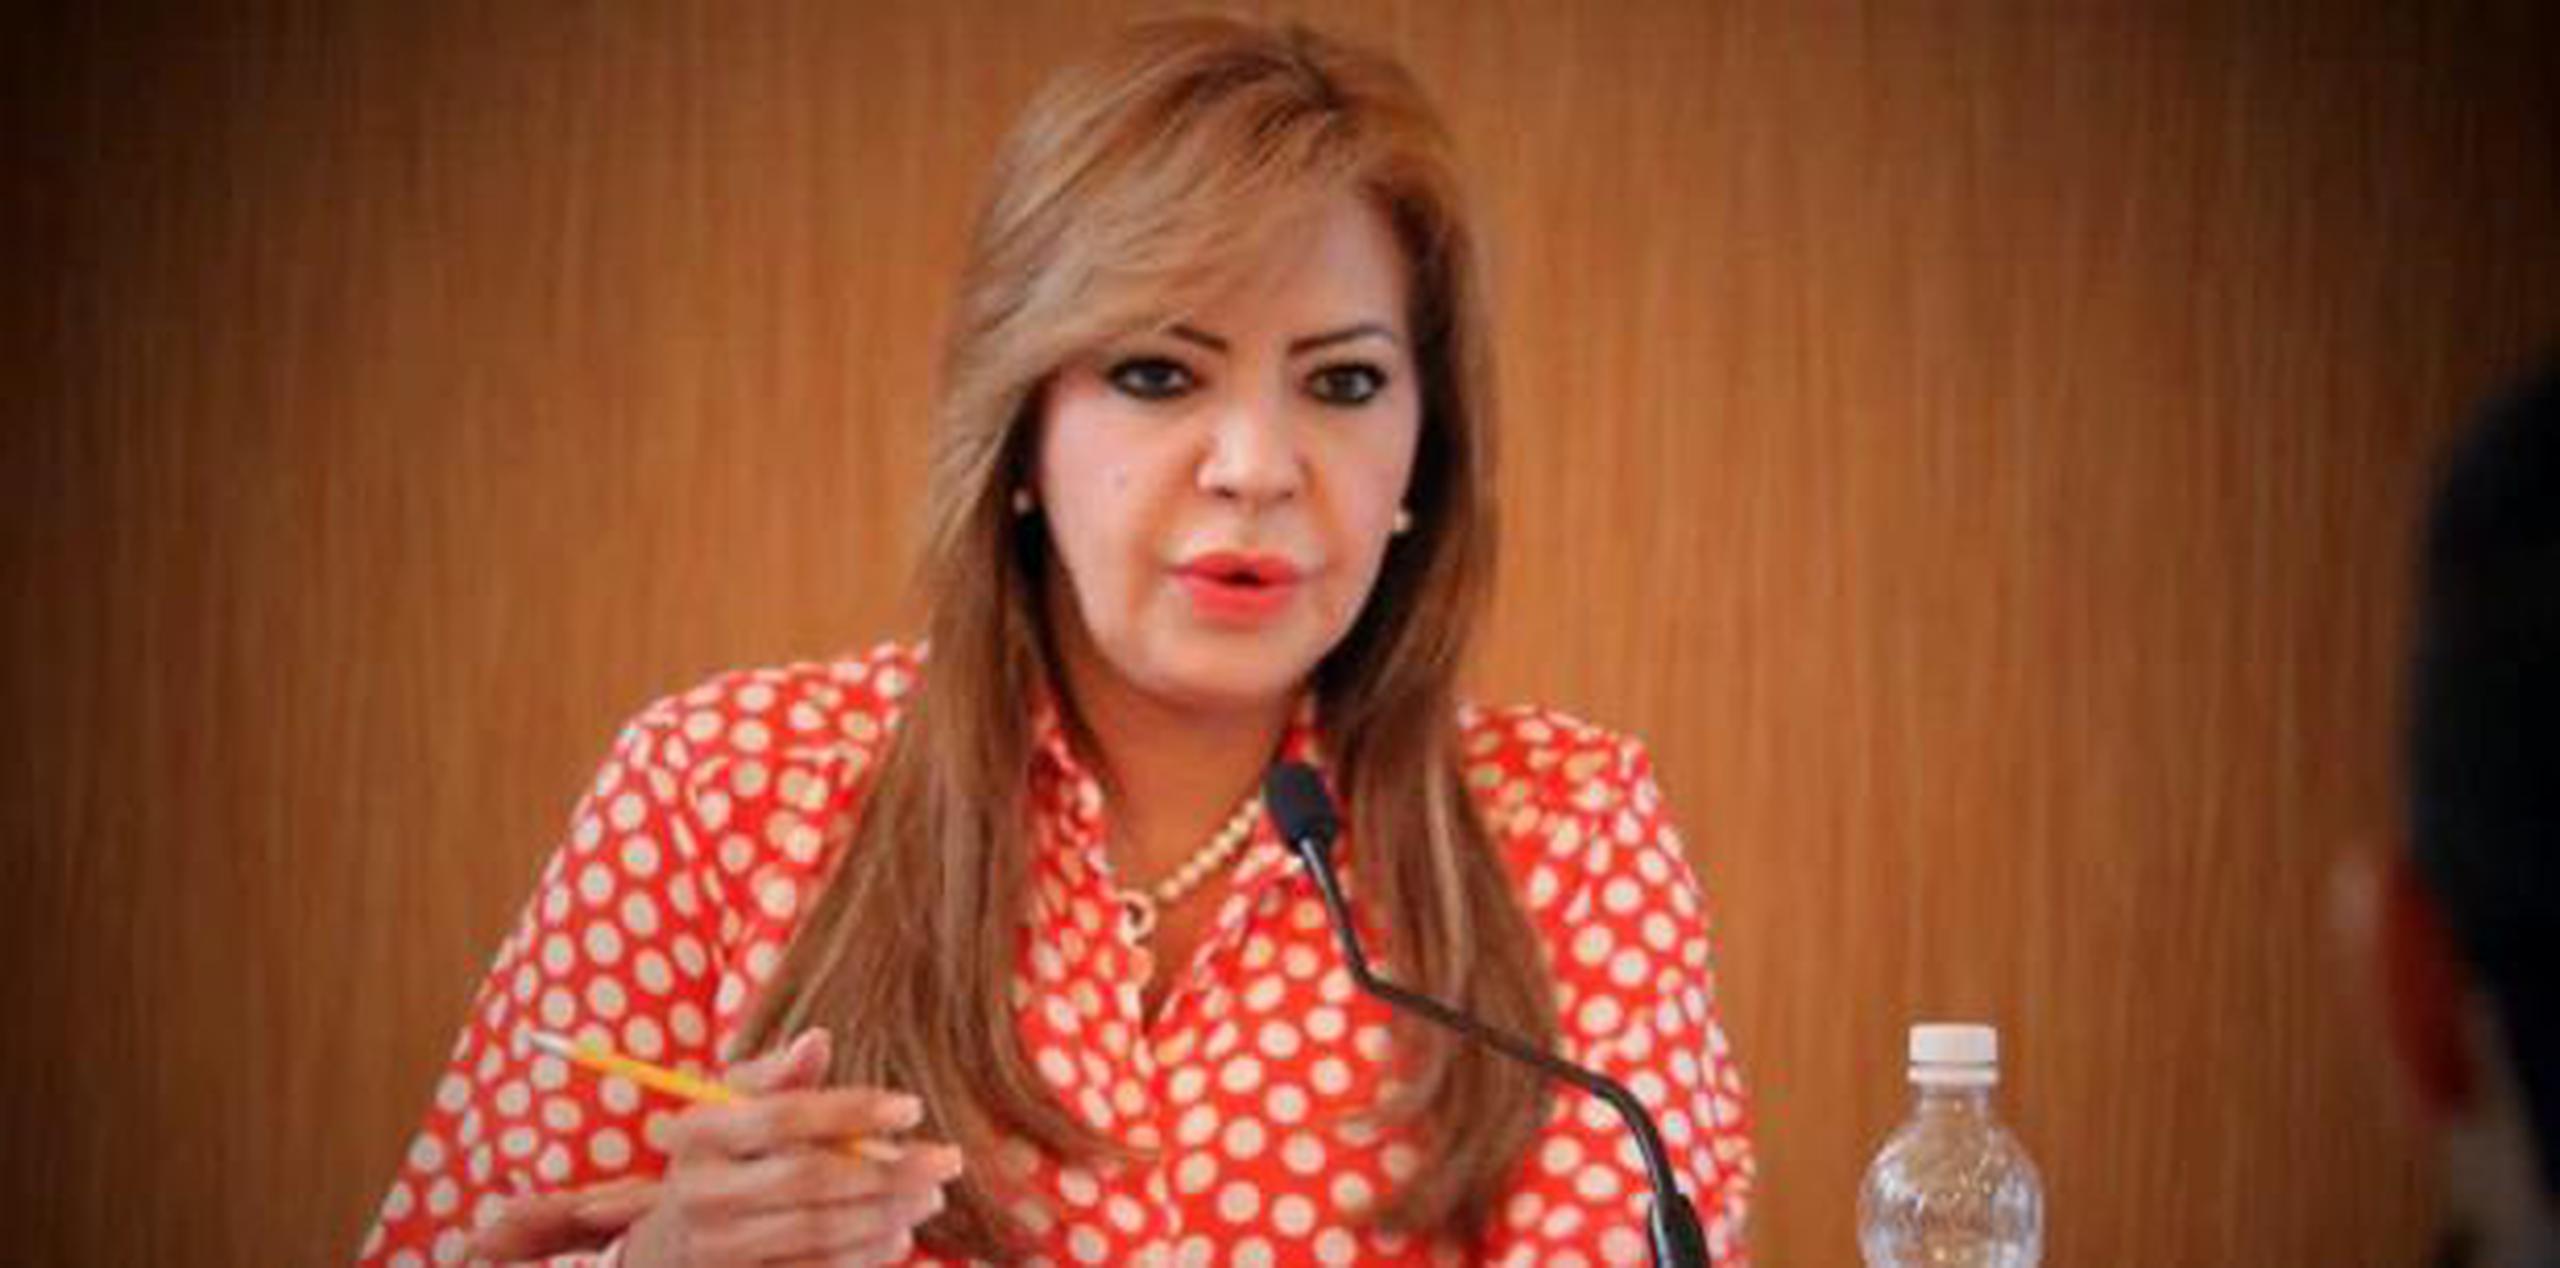 Evelyn Vázquez Nieves, senadora del Partido Nuevo Progresista. (Suministrada)